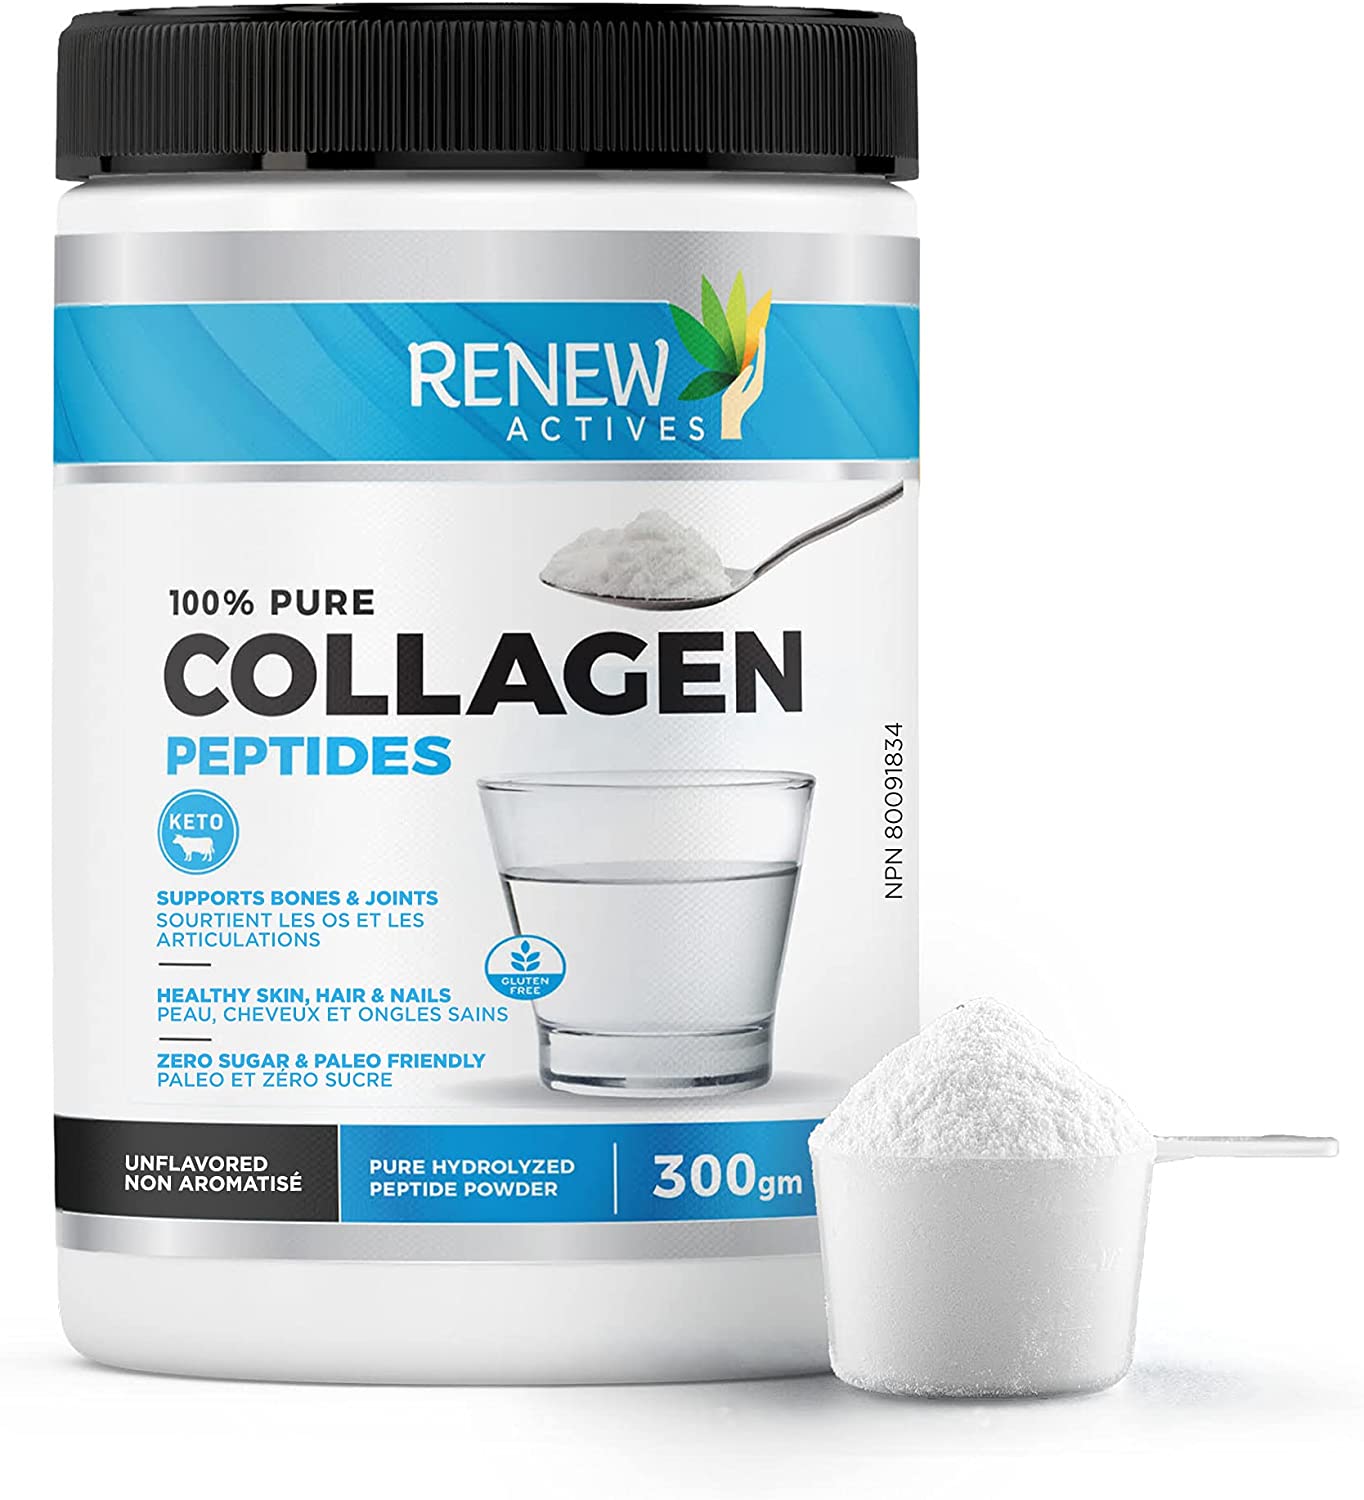 collagen peptides powder